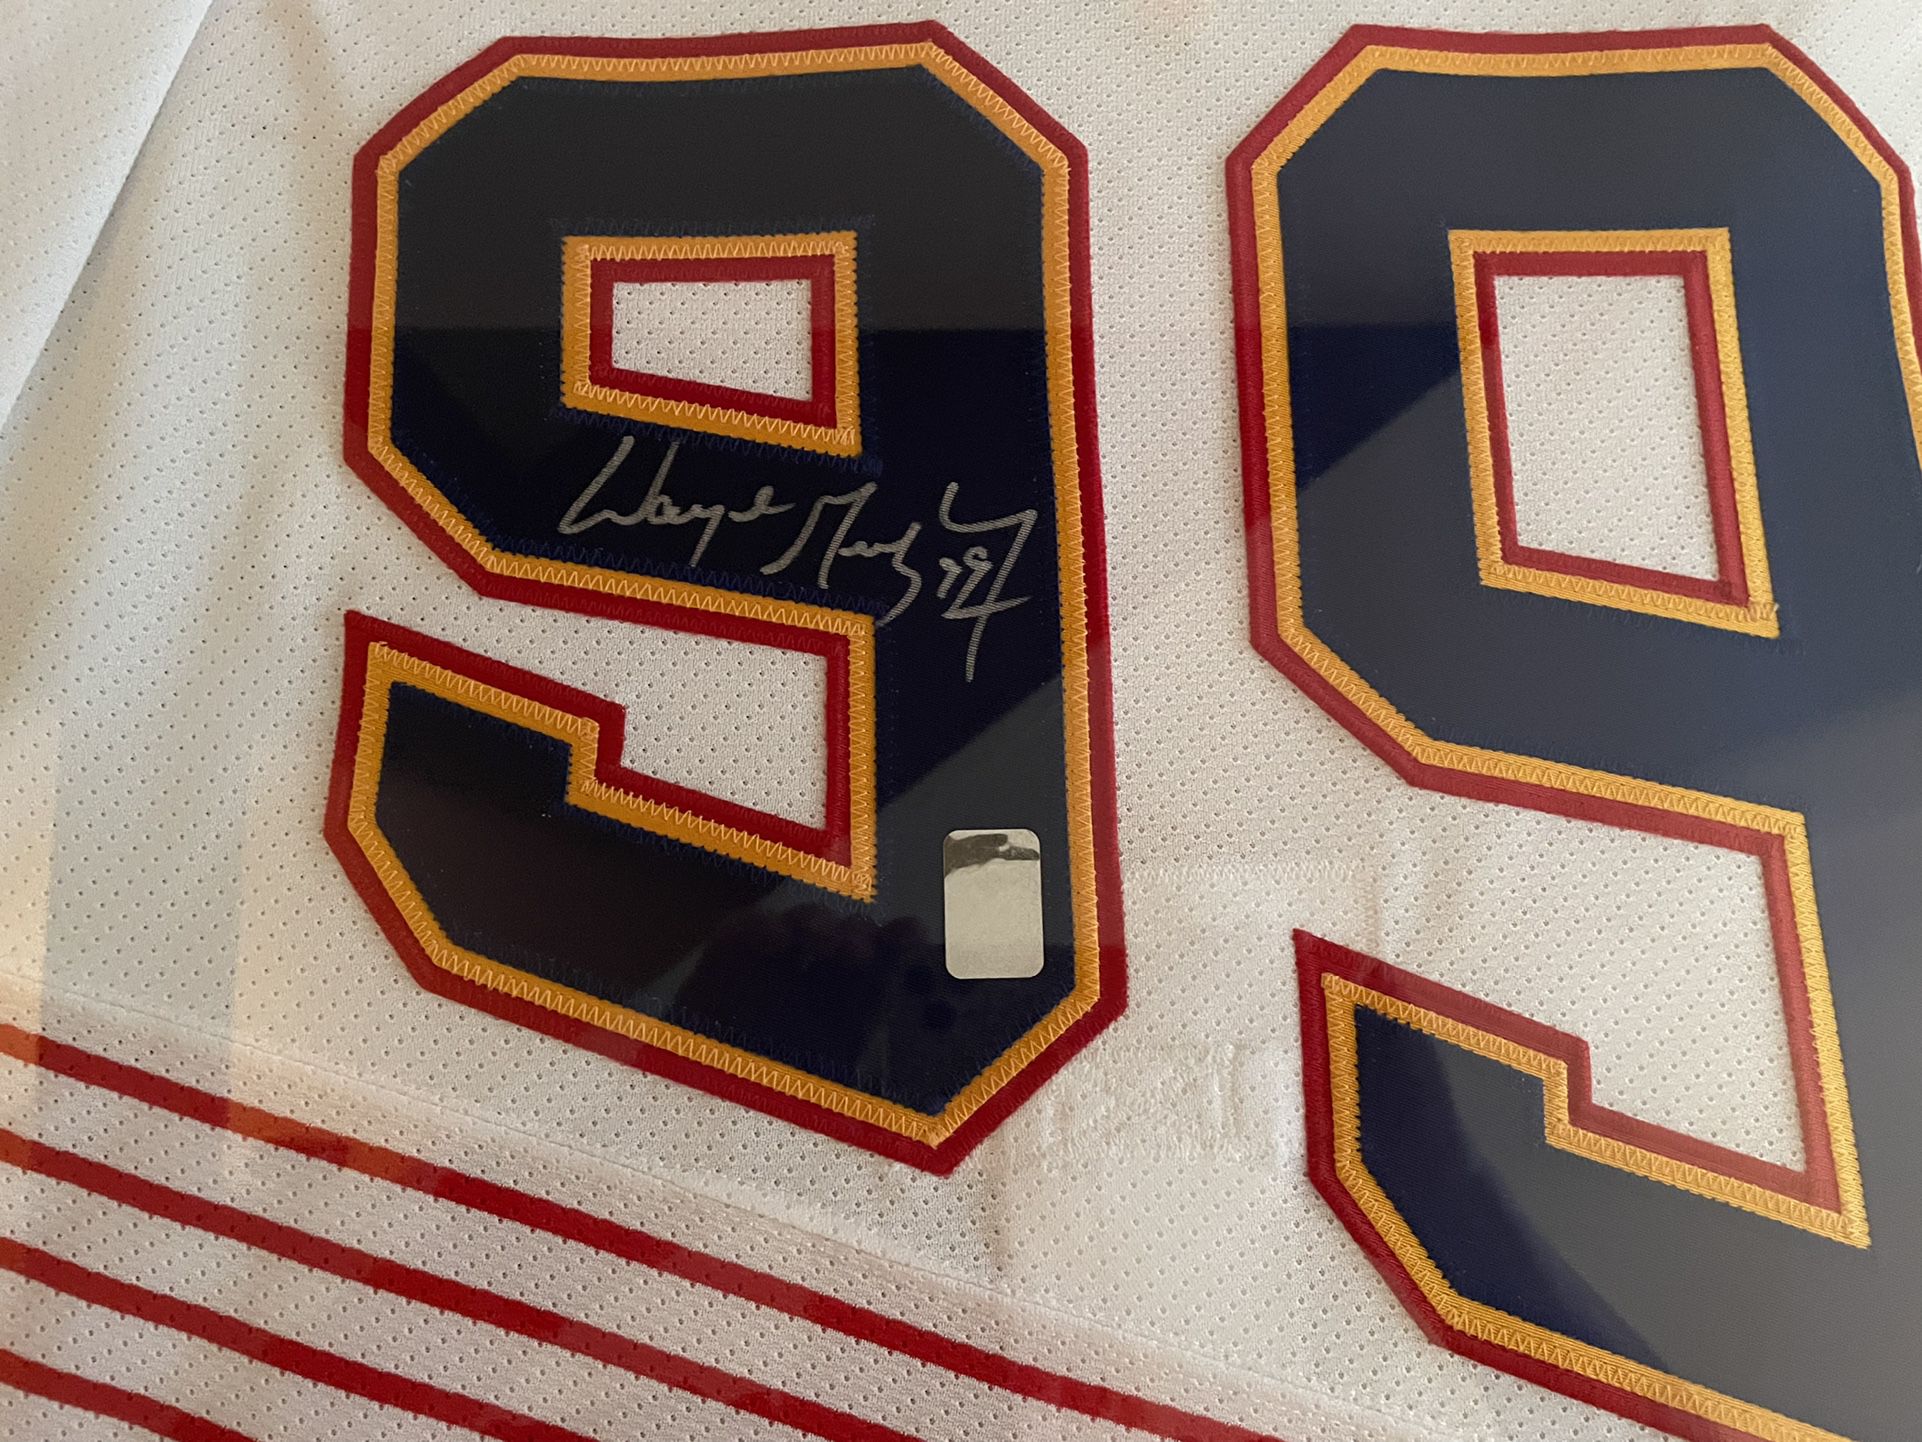 Wayne Gretzky St. Louis Blues Authentic Jersey – Autographed – Upper Deck  Authenticated Letter